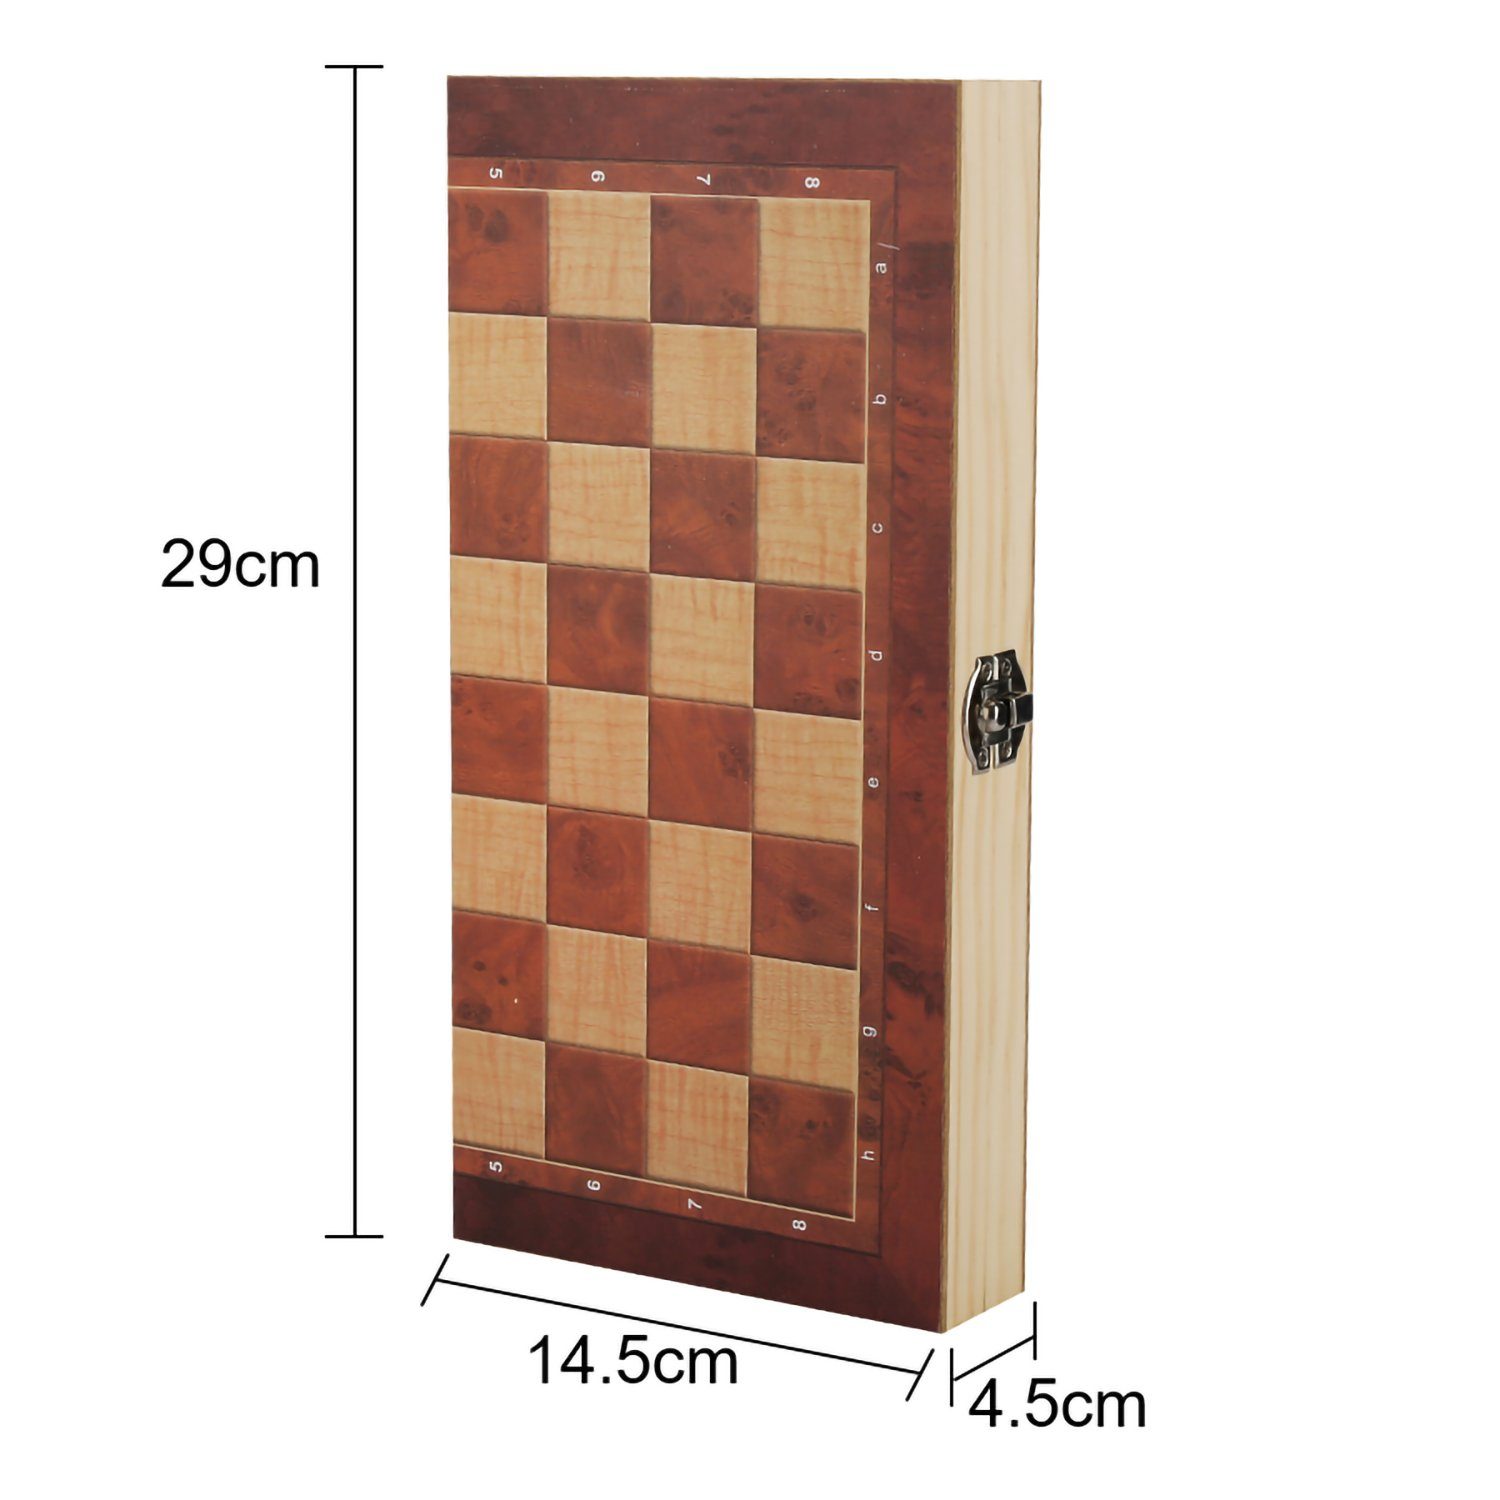 Lospitch Spiel, Schach Holzbox PROFI 29x29CM Schachspiel Backgammon Schachtisch